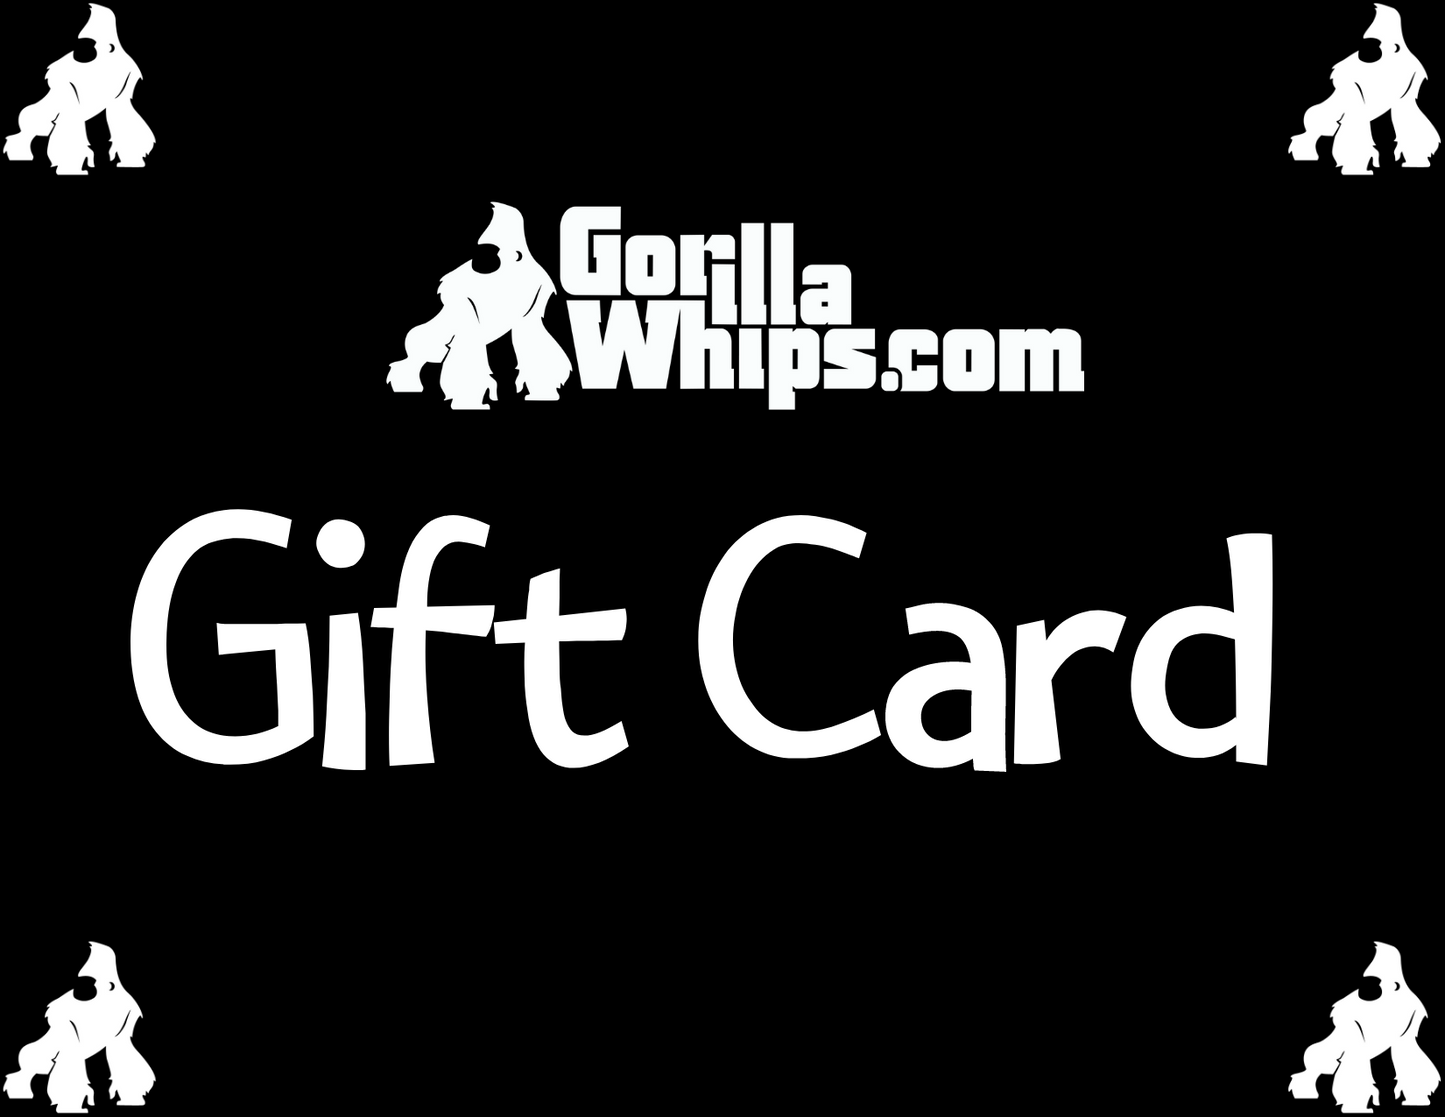 Gorilla Whips Gift Card